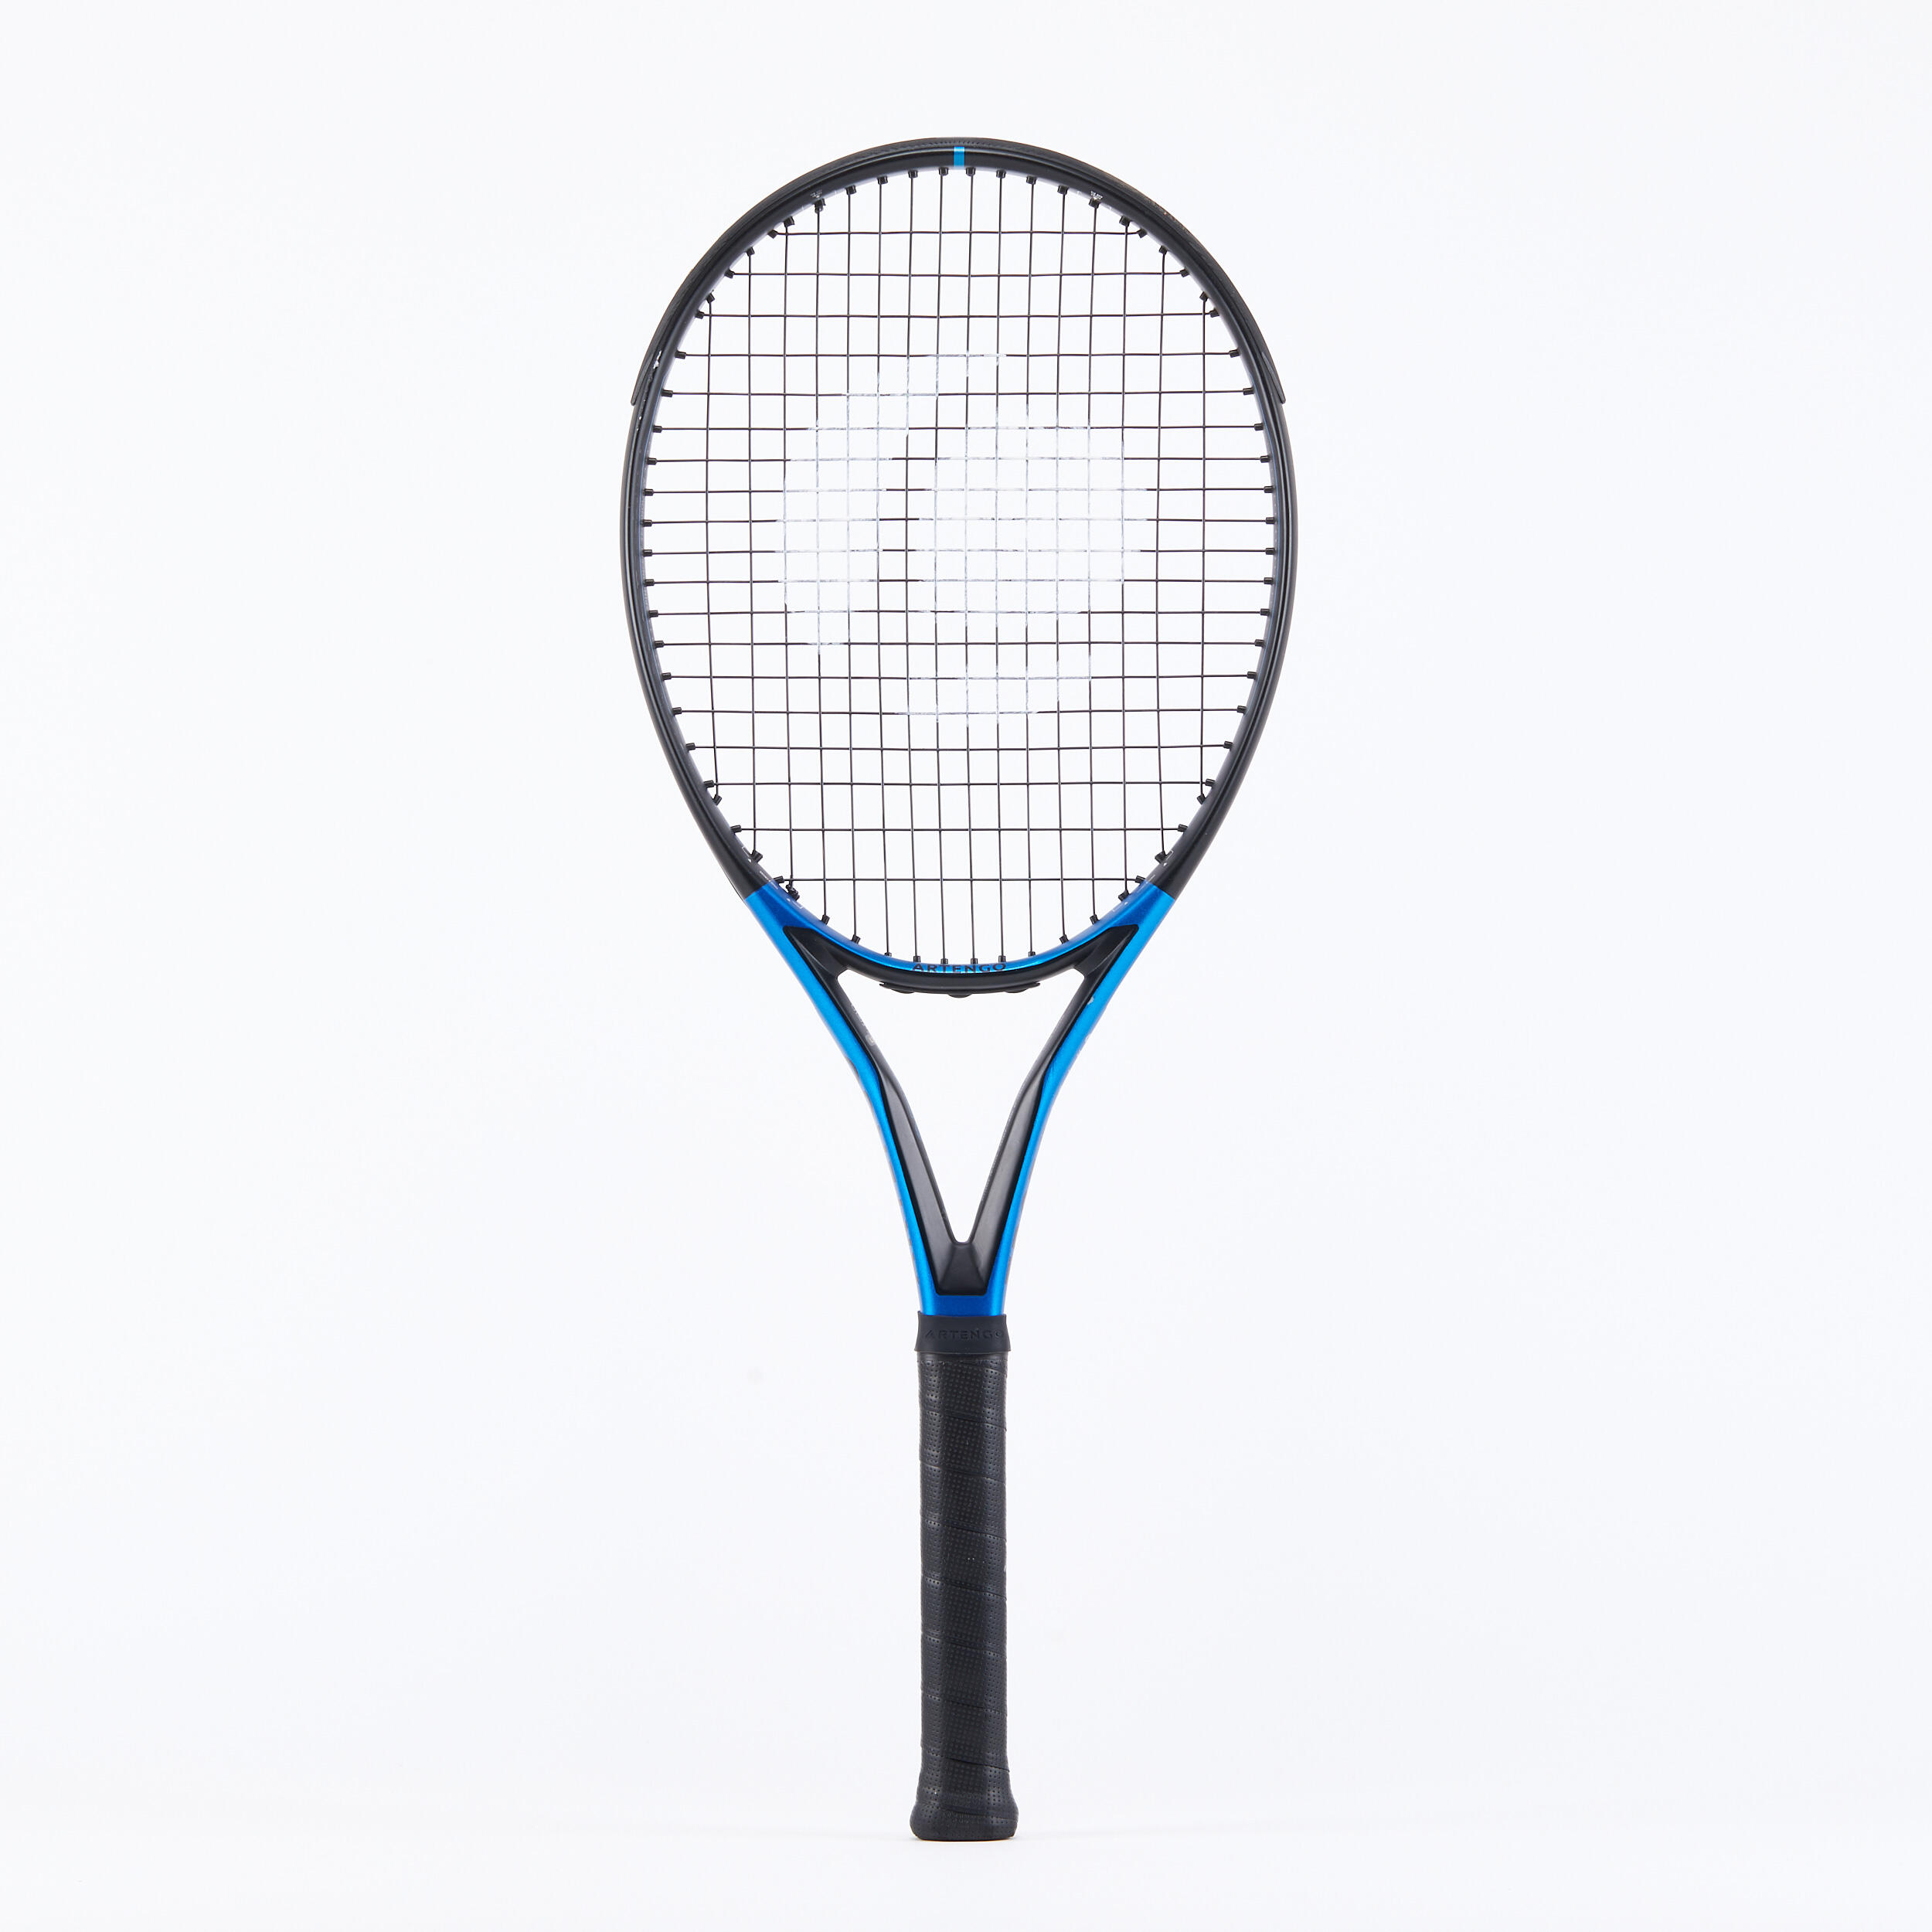 Erwachsene Tennisschläger - TR930 Spin schwarz blau 285 g